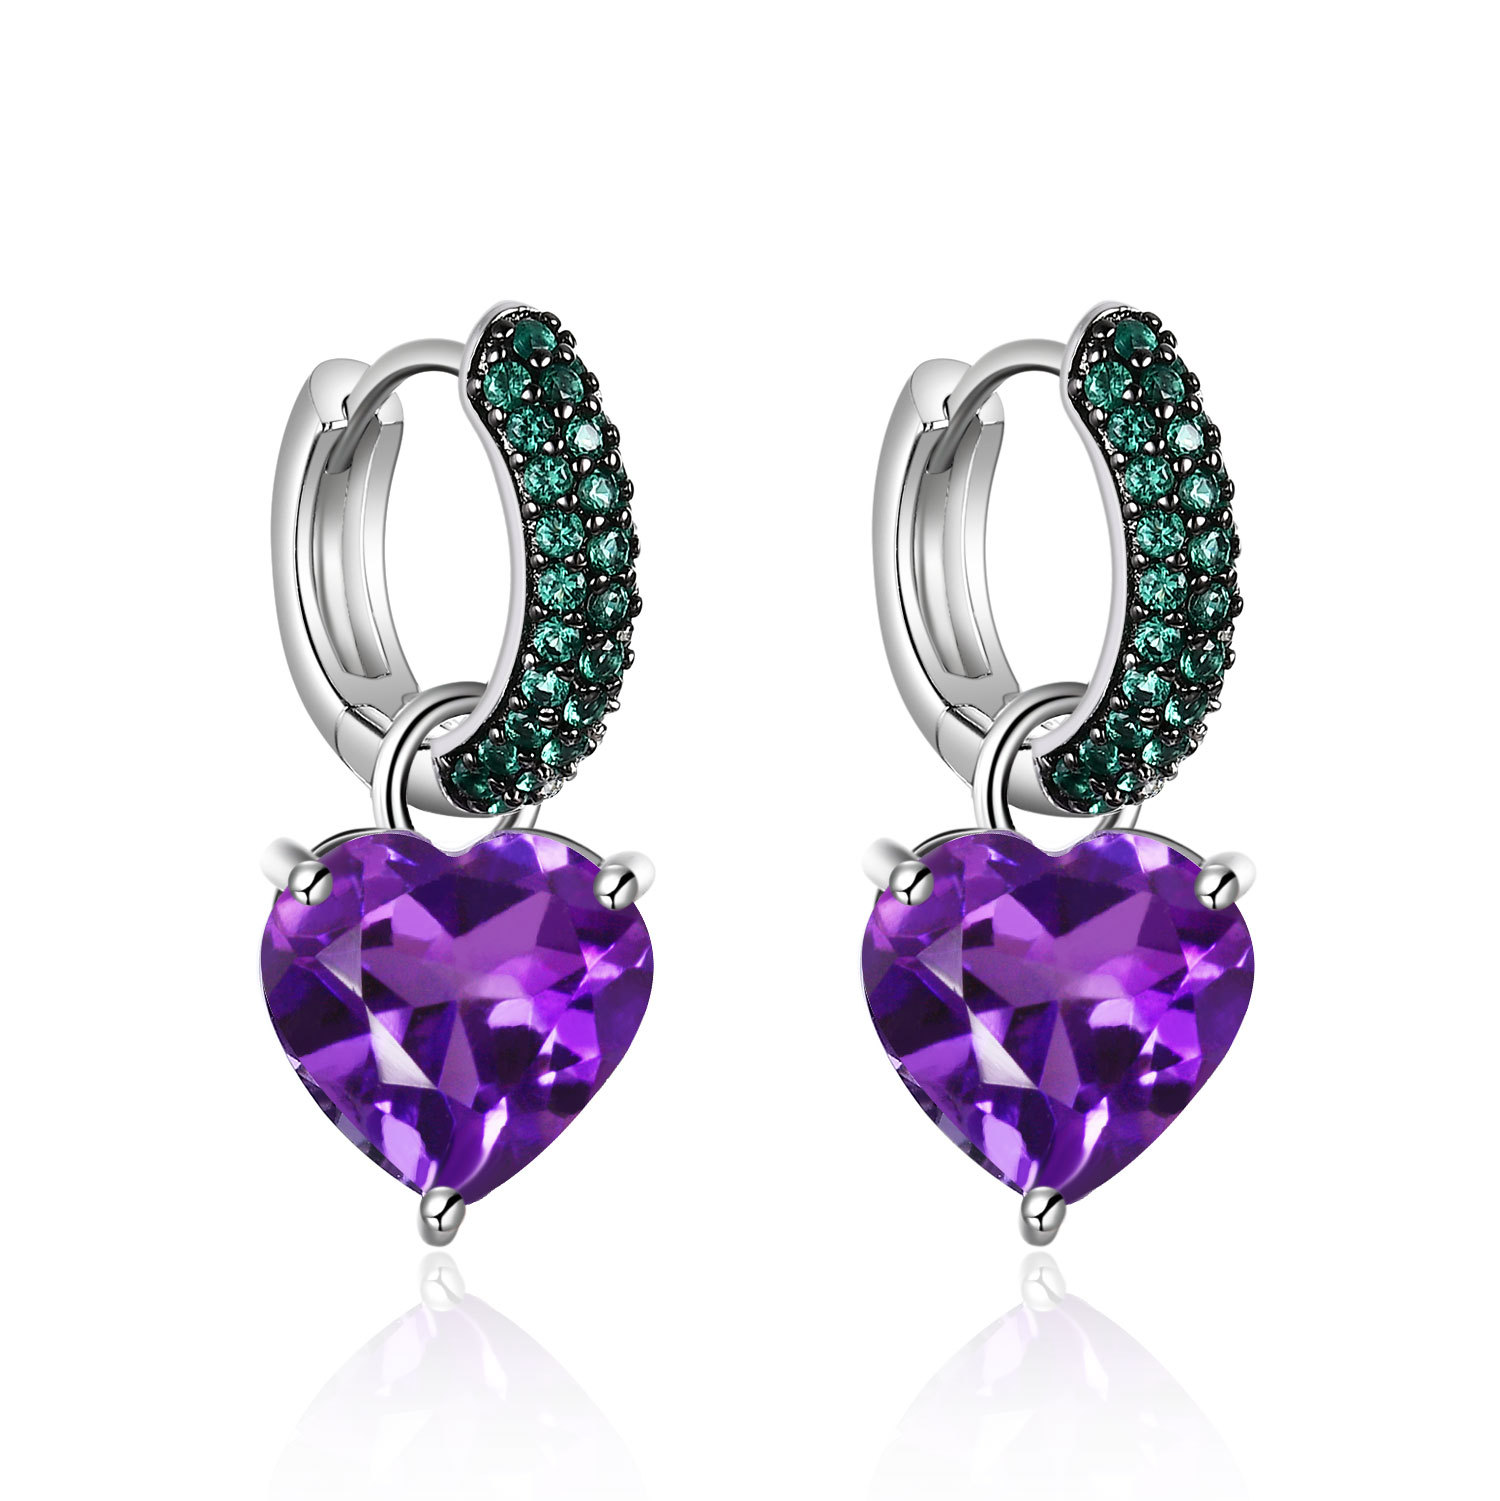 Natural gemstone heart shaped pendant S925 sterling silver earrings-BlingRunway